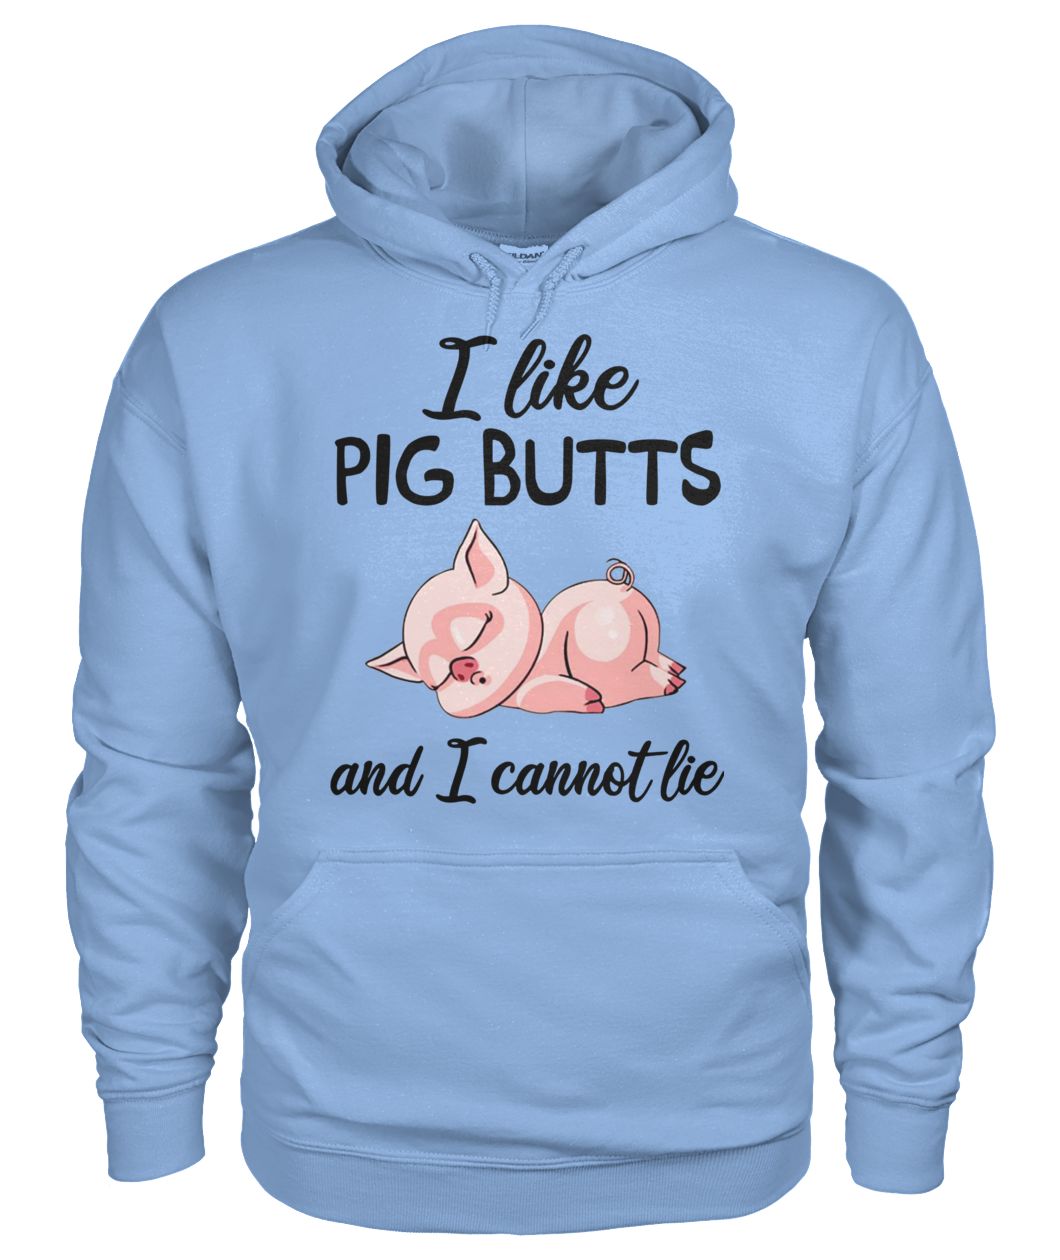 I like pig butts and I cannot lie gildan hoodie